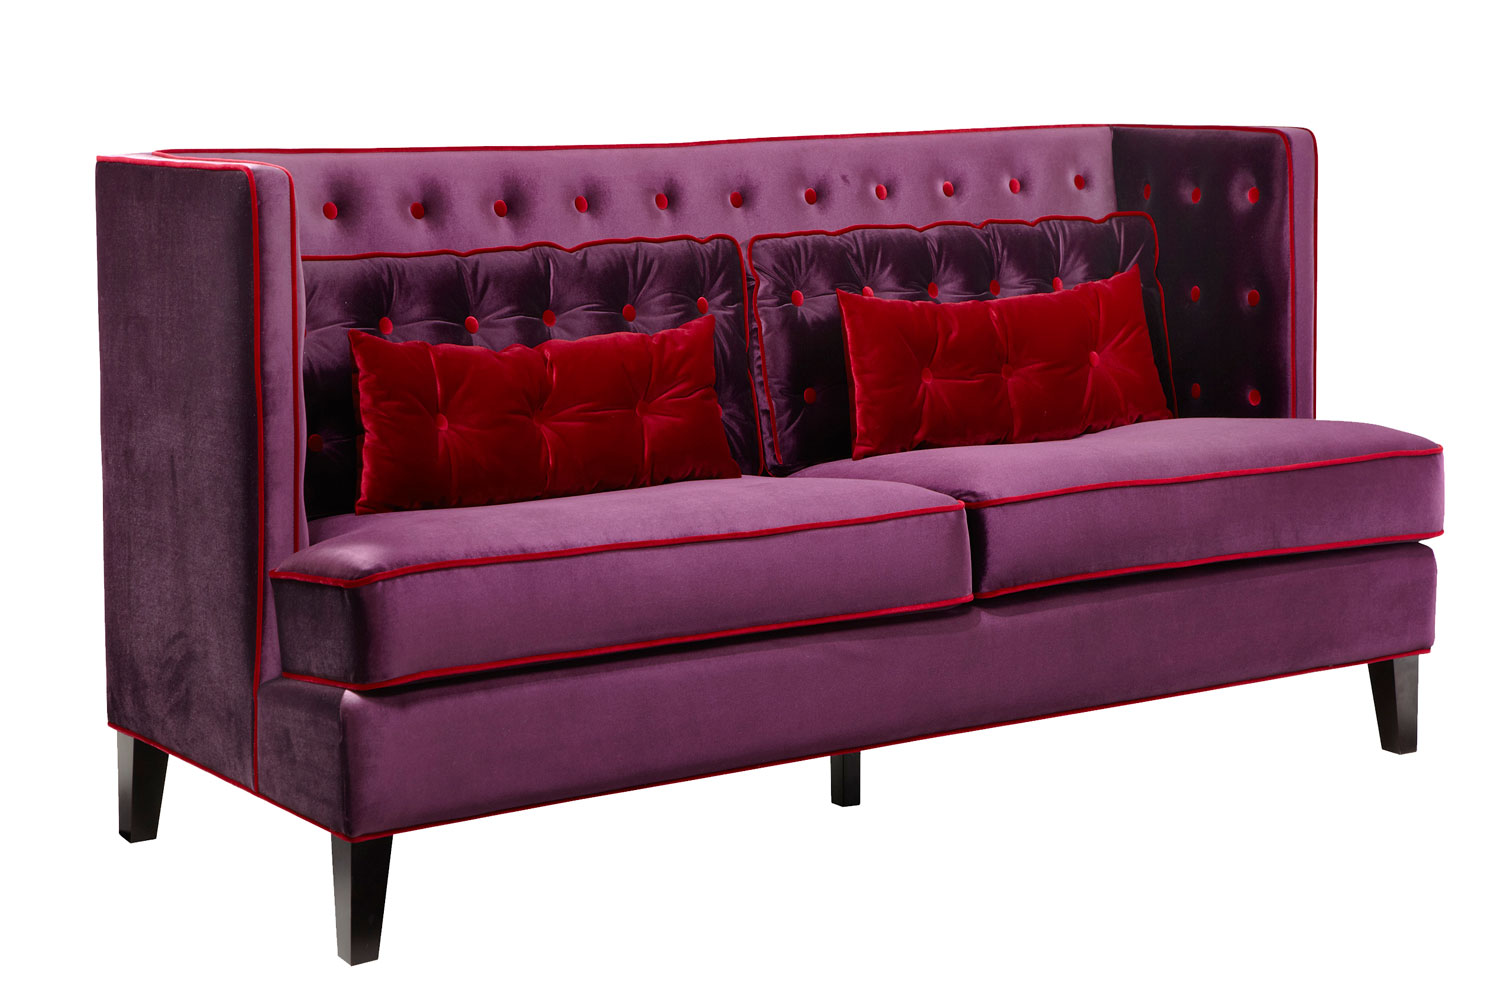 Armen Living Moul-inch Sofa Set - Velvet Purple/Red Piping